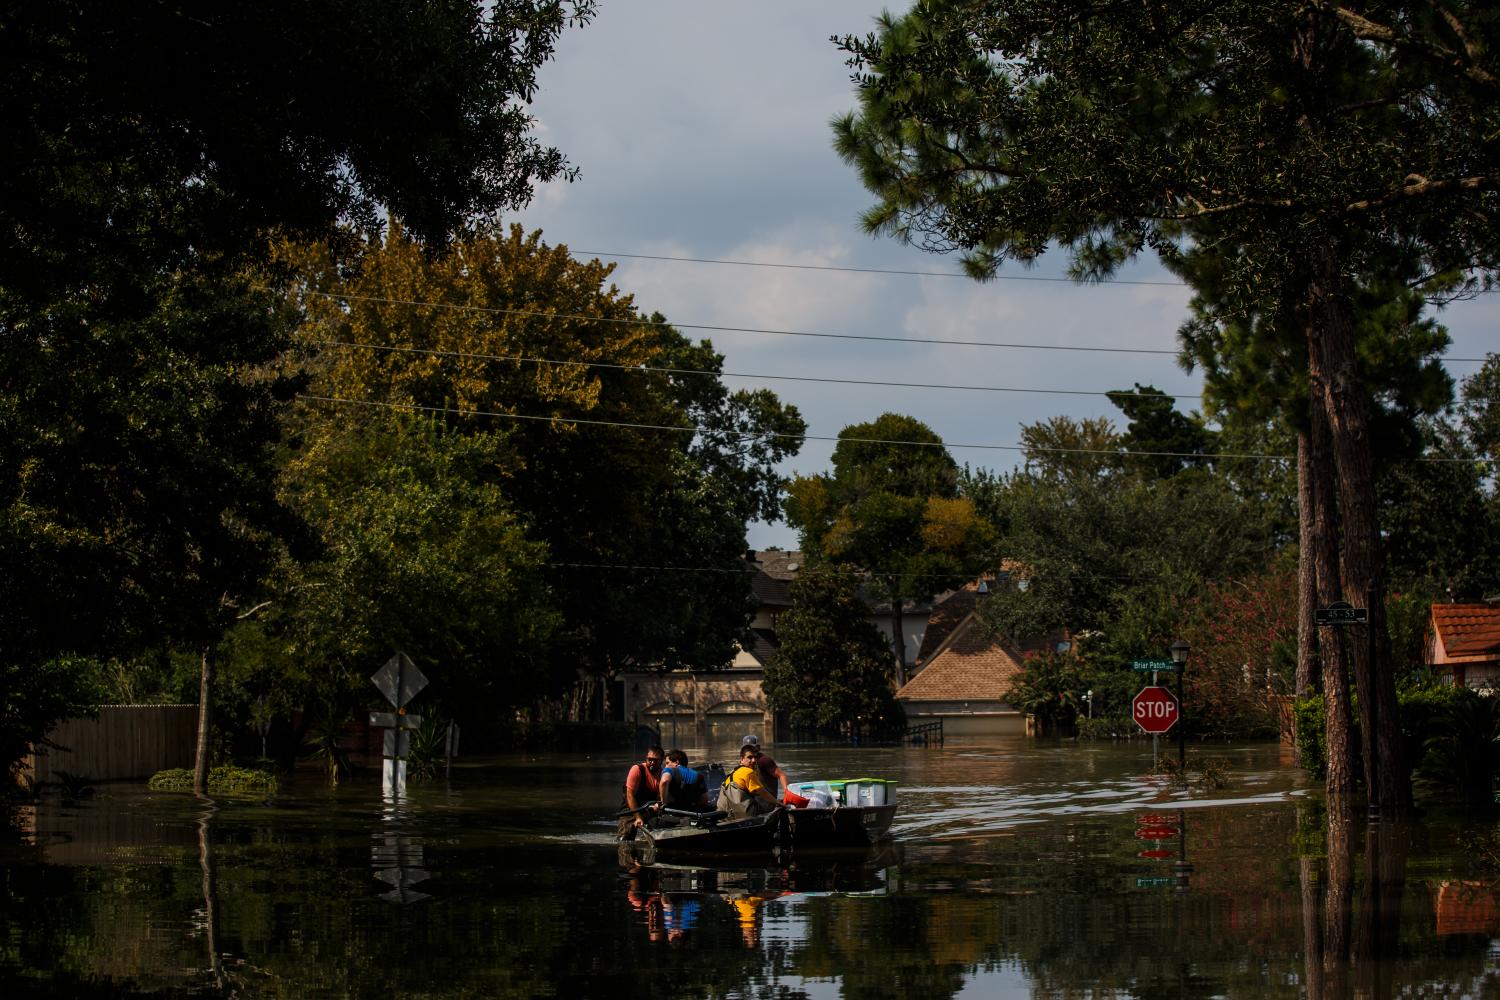 Hurricane Harvey has wreaked devastation for the inhabitants of Houston, Texas.